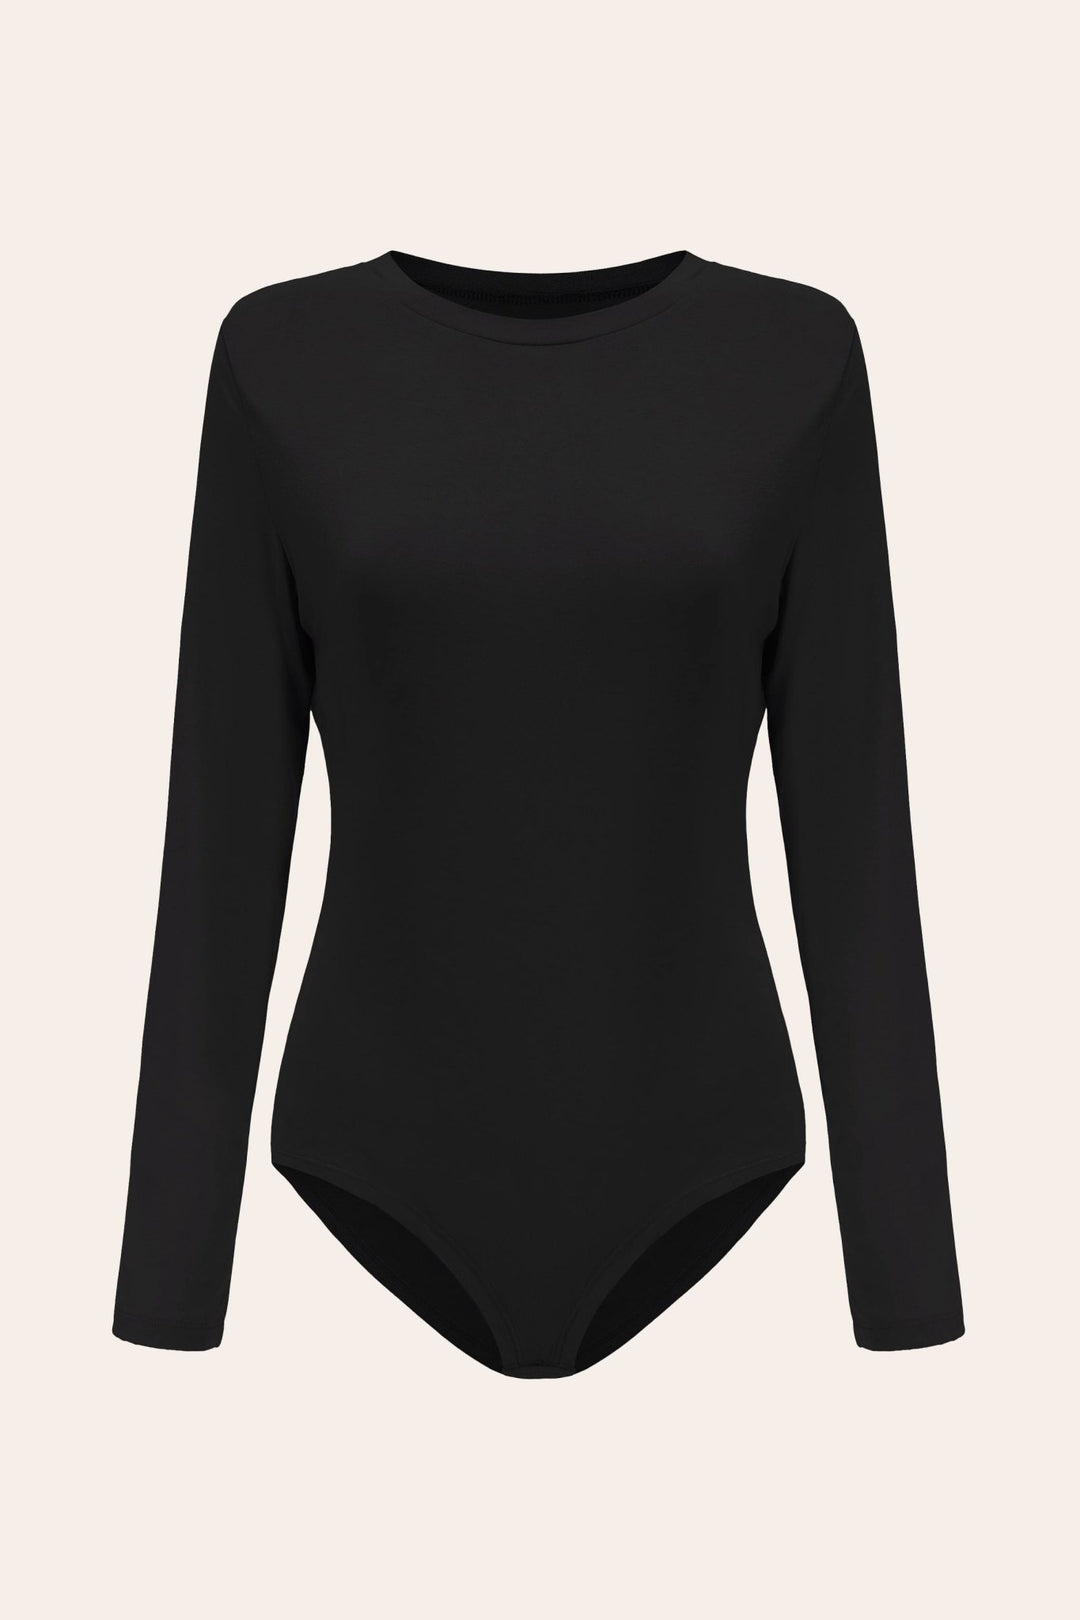 POSESHE Plus Size Long Sleeve Bodysuit - Stylish & Comfortable Closet  Essential